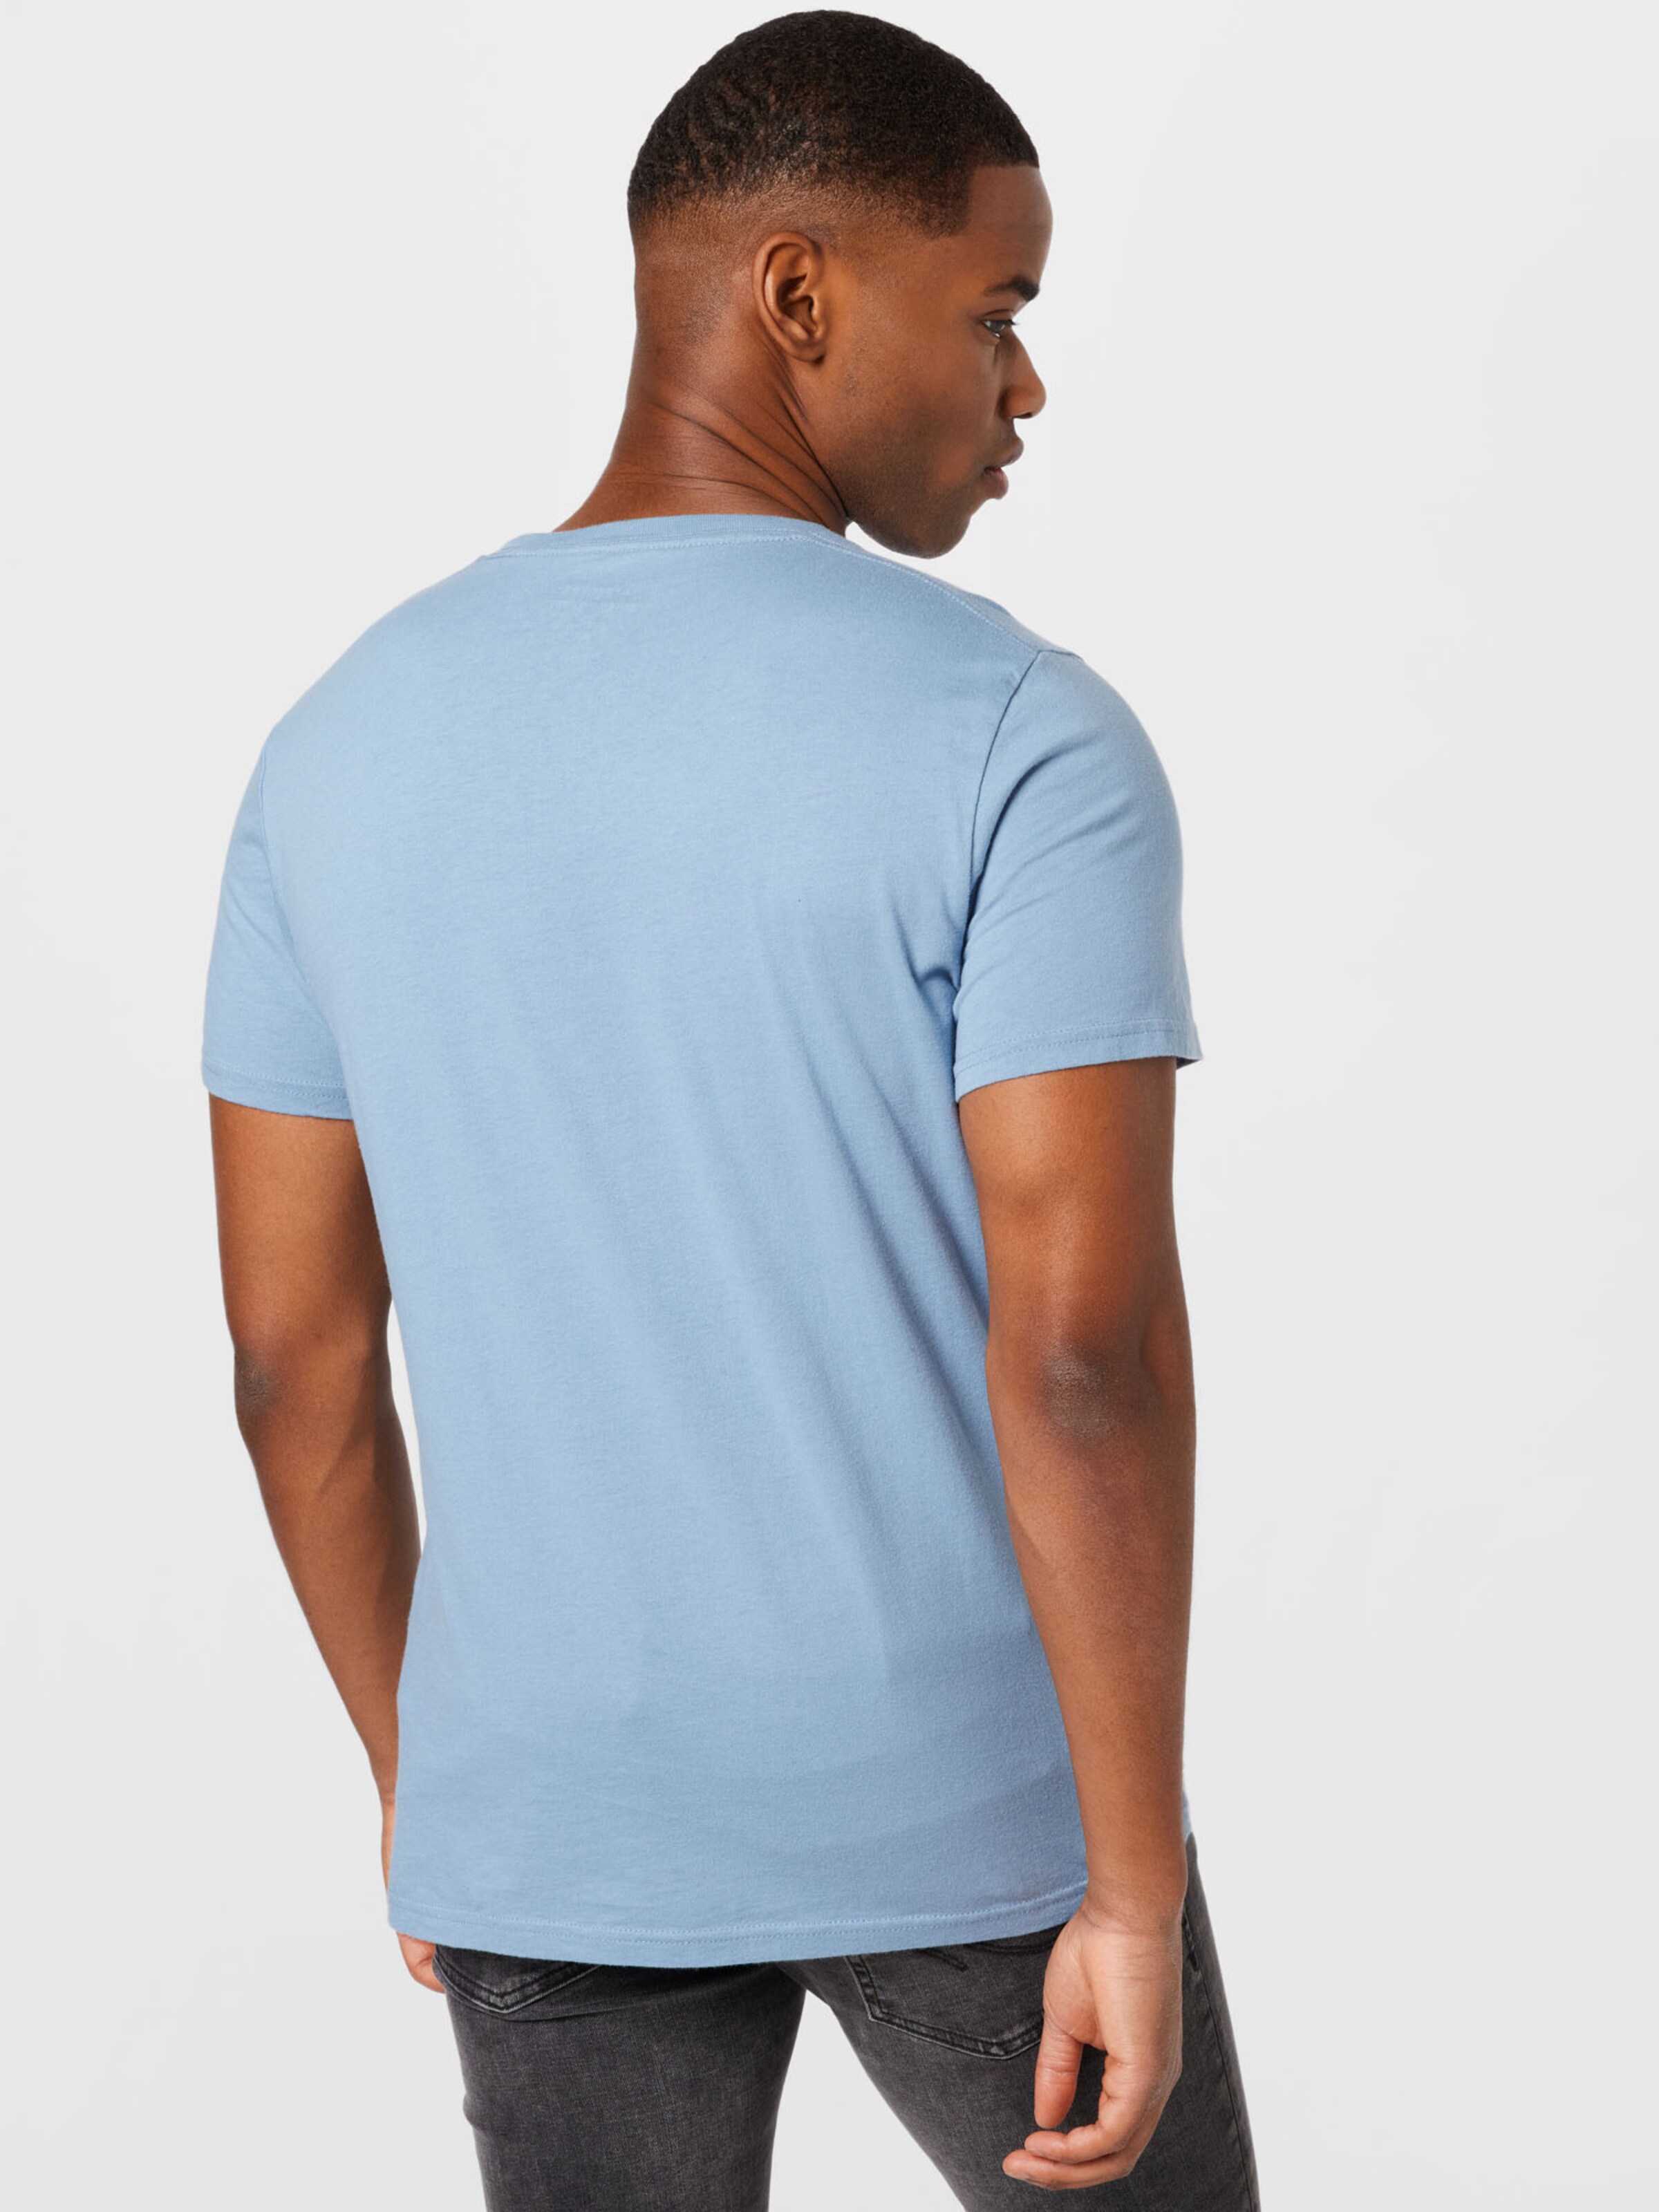 Männer Shirts HOLLISTER T-Shirt in Mischfarben - II00584